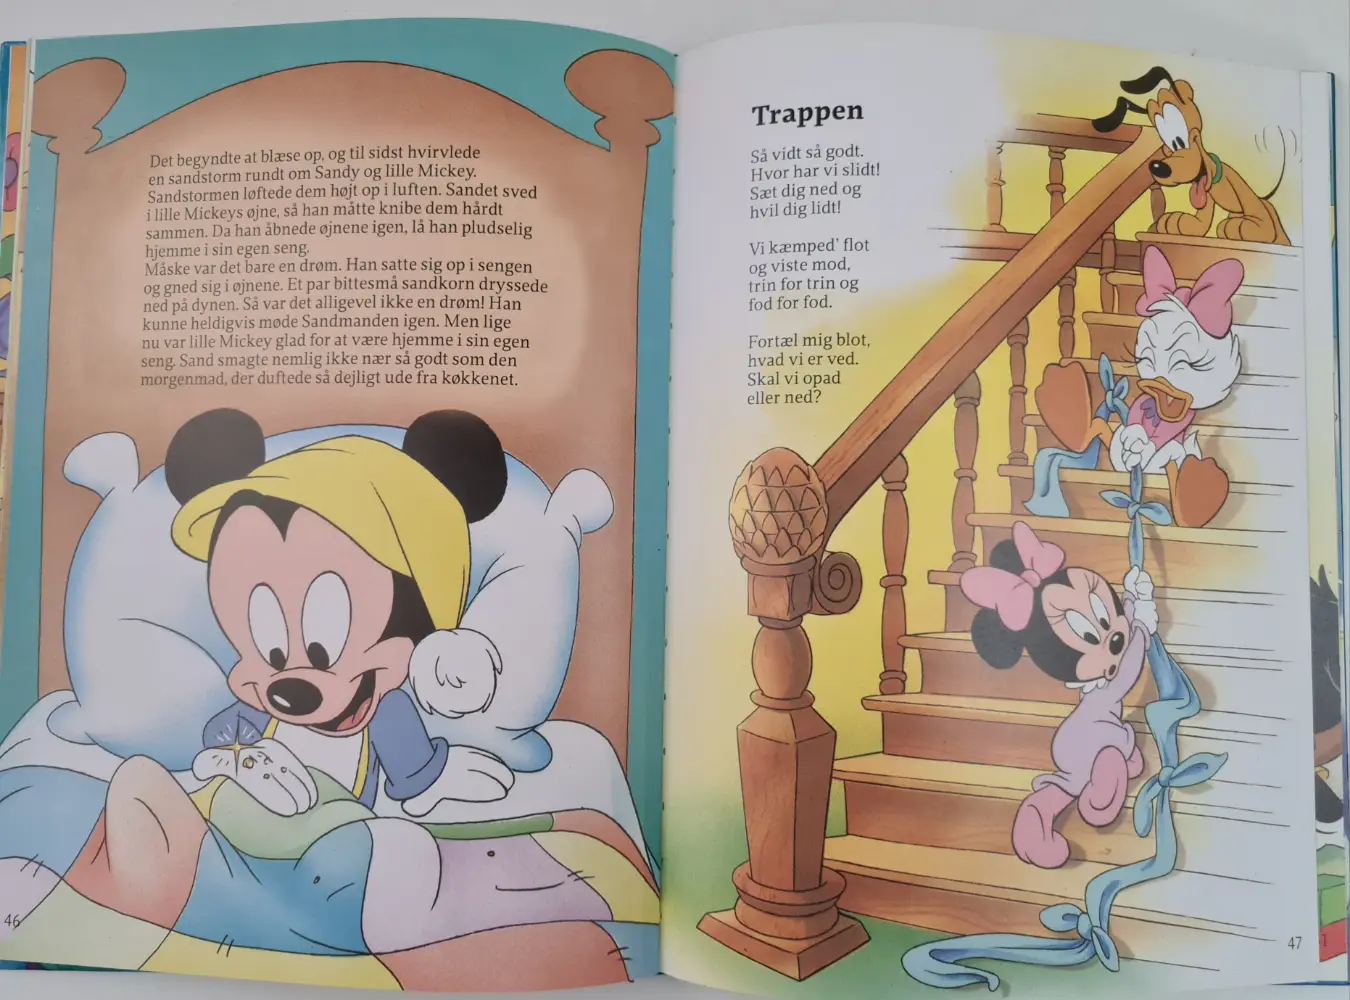 Disney Godnat historier Indbundet bog